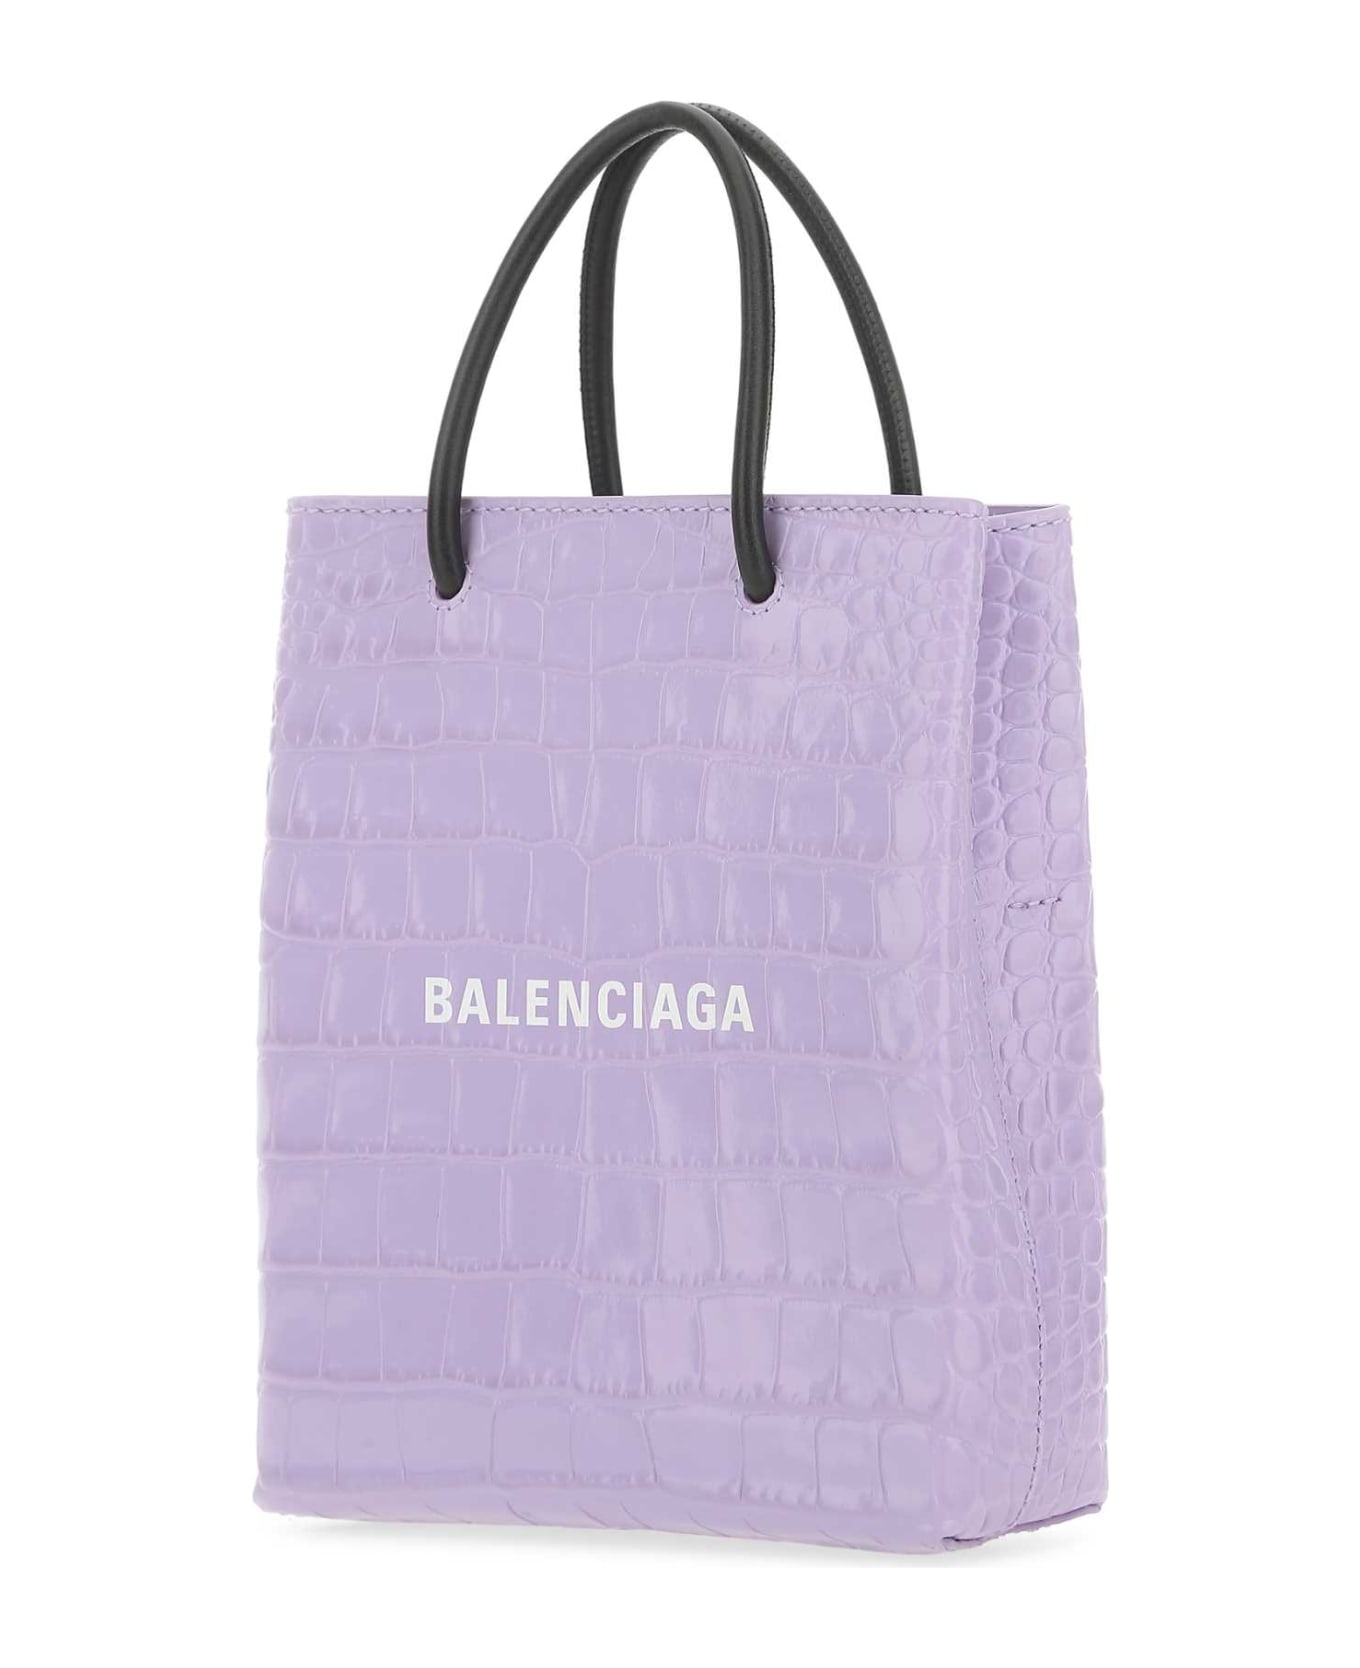 Balenciaga Lilac Leather Handbag - 5390